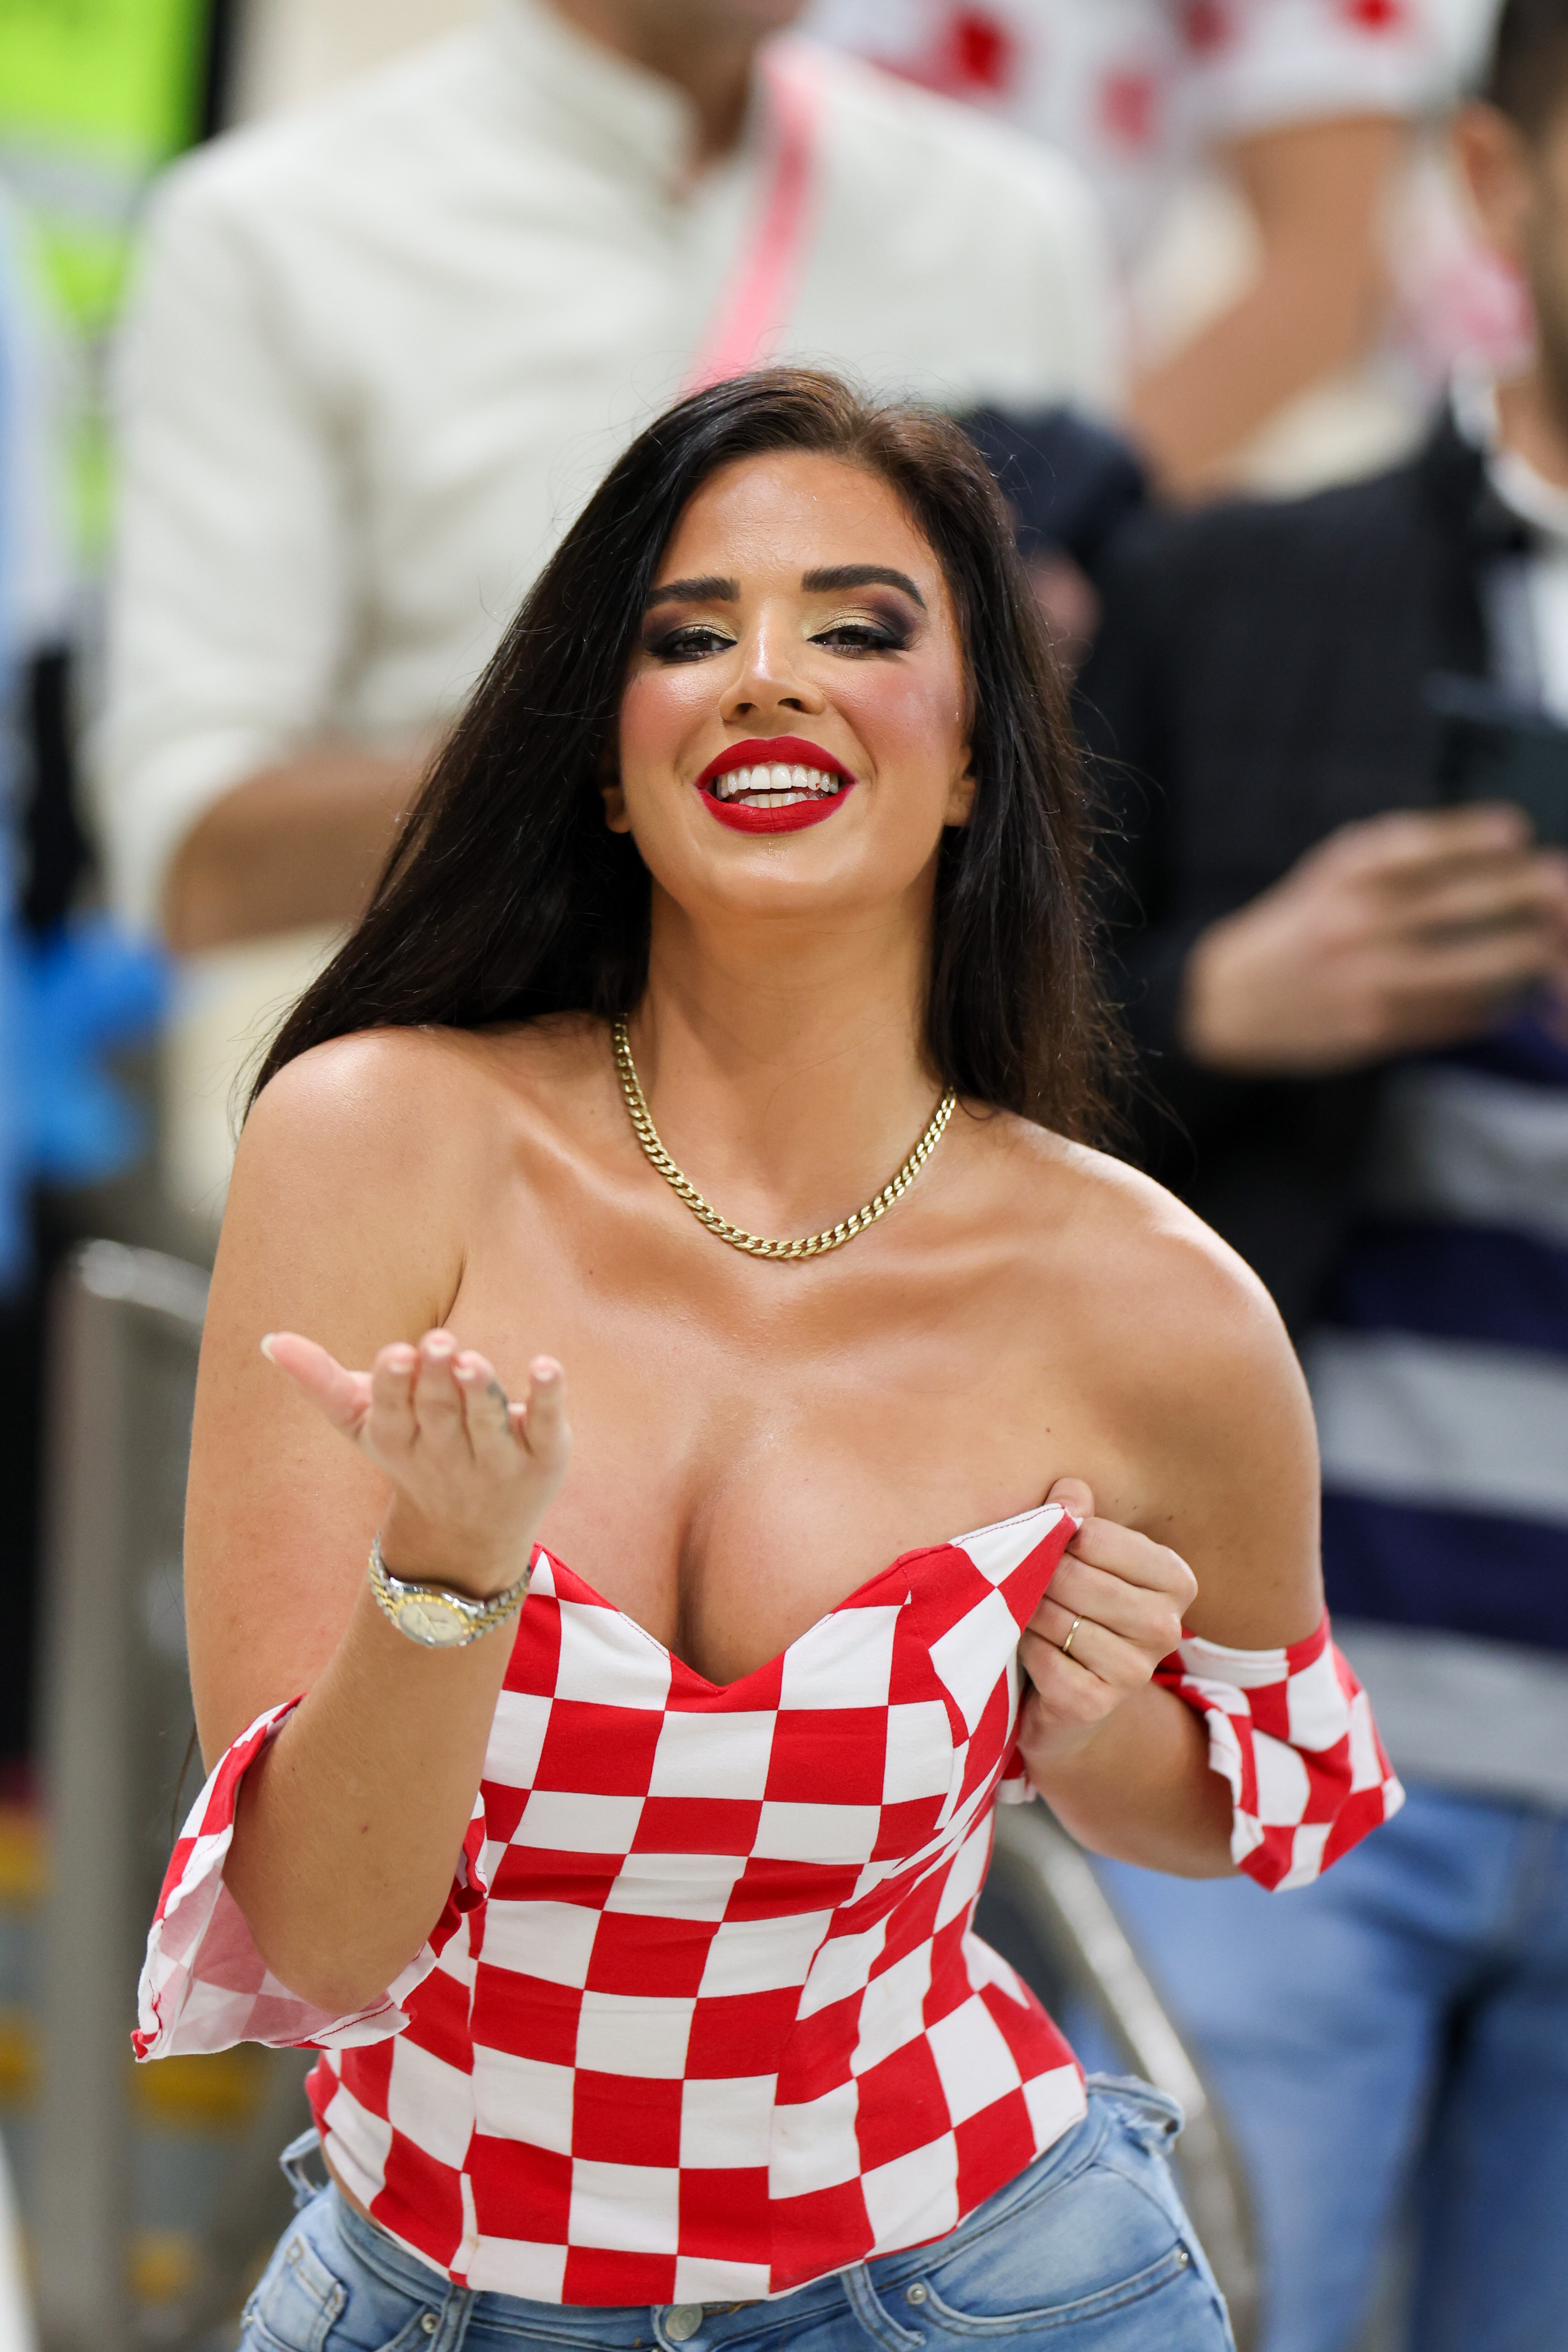 Die Schönheit begeisterte bei jedem Spiel in von Kroatien inspirierten Outfits